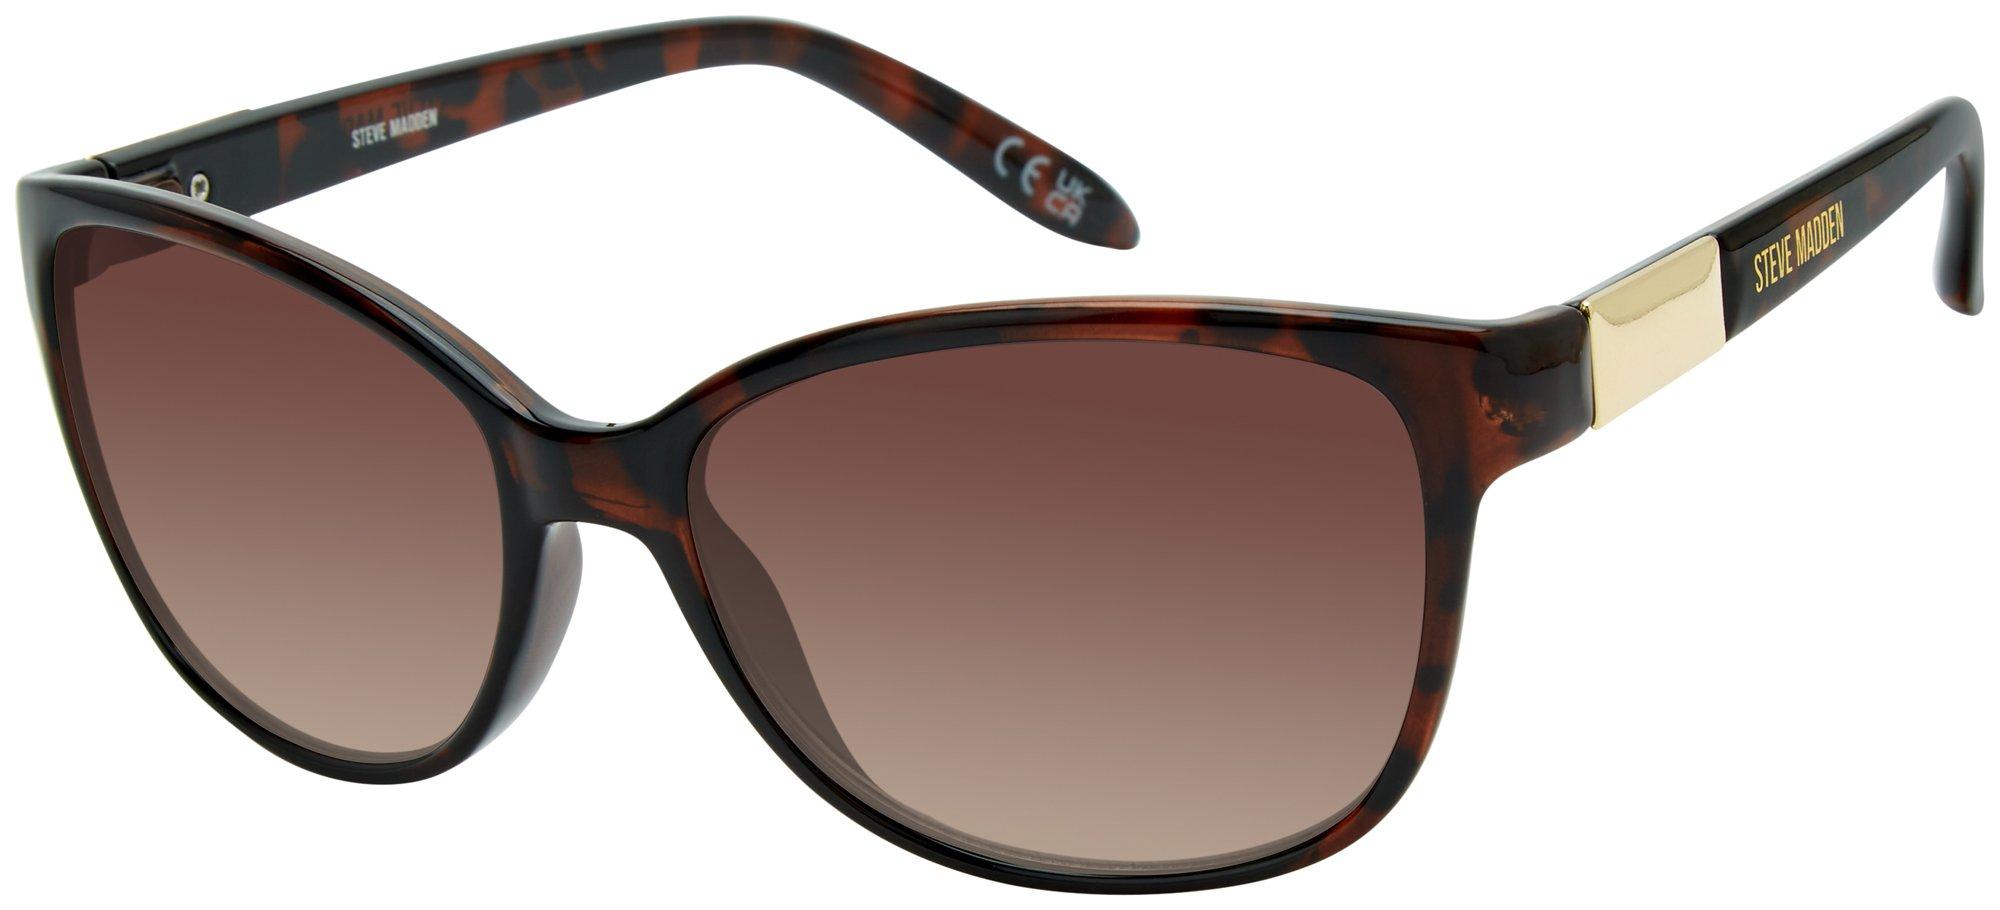 Womens Cateye Tortoise Sunglasses